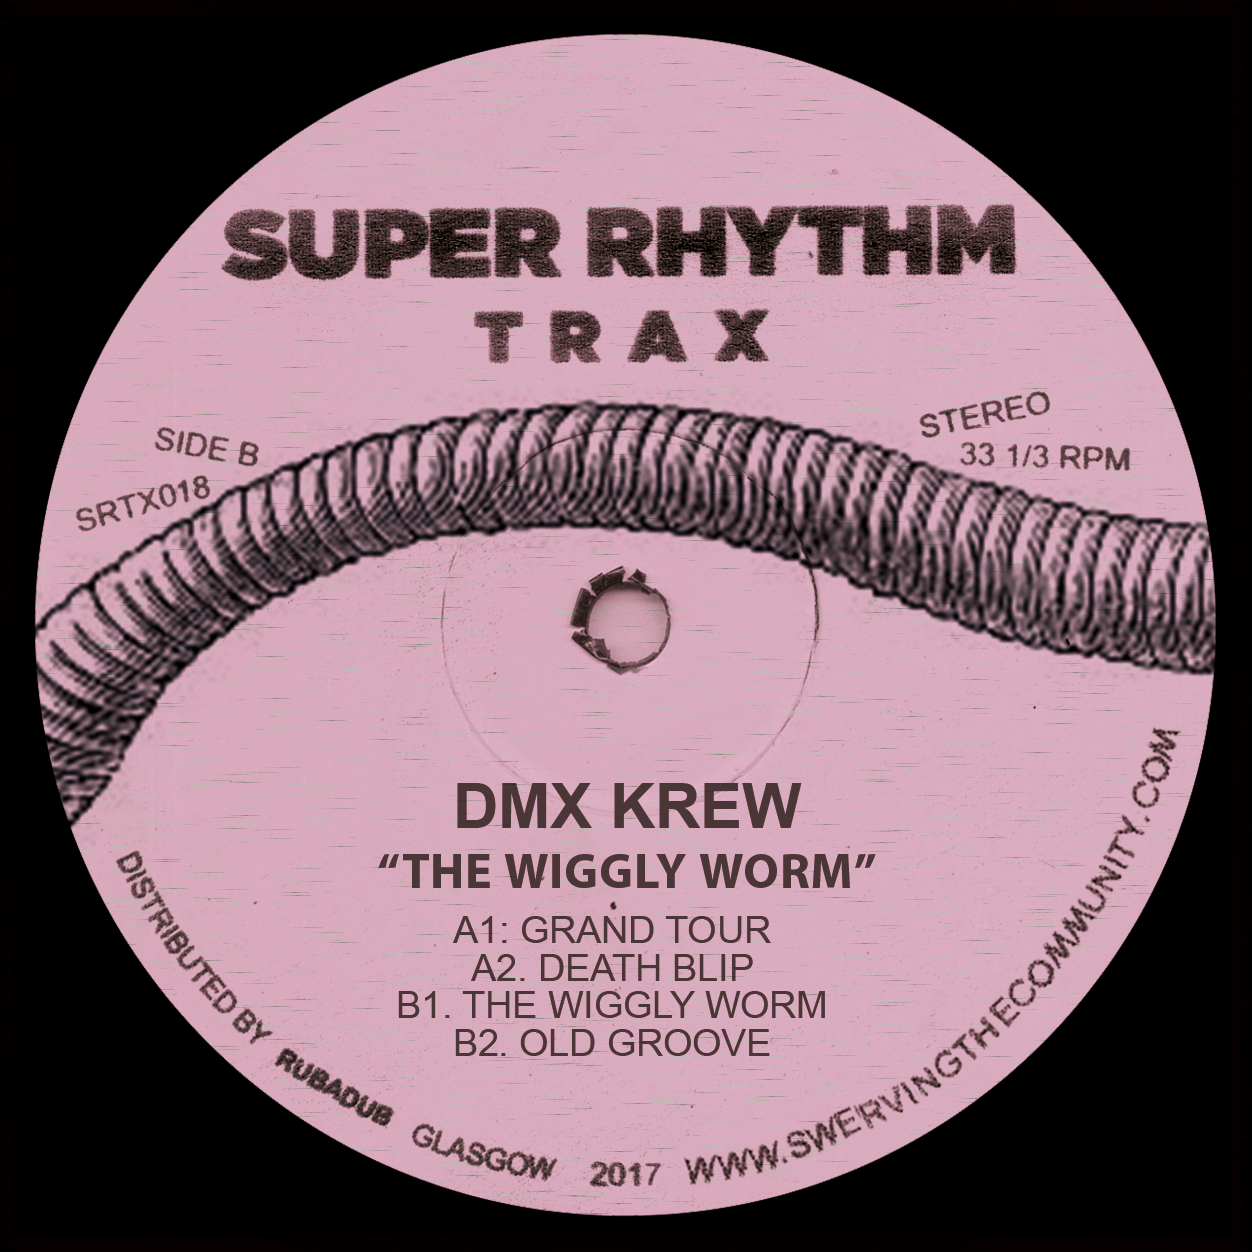 DMX Krew/THE WIGGLY WORM 12"